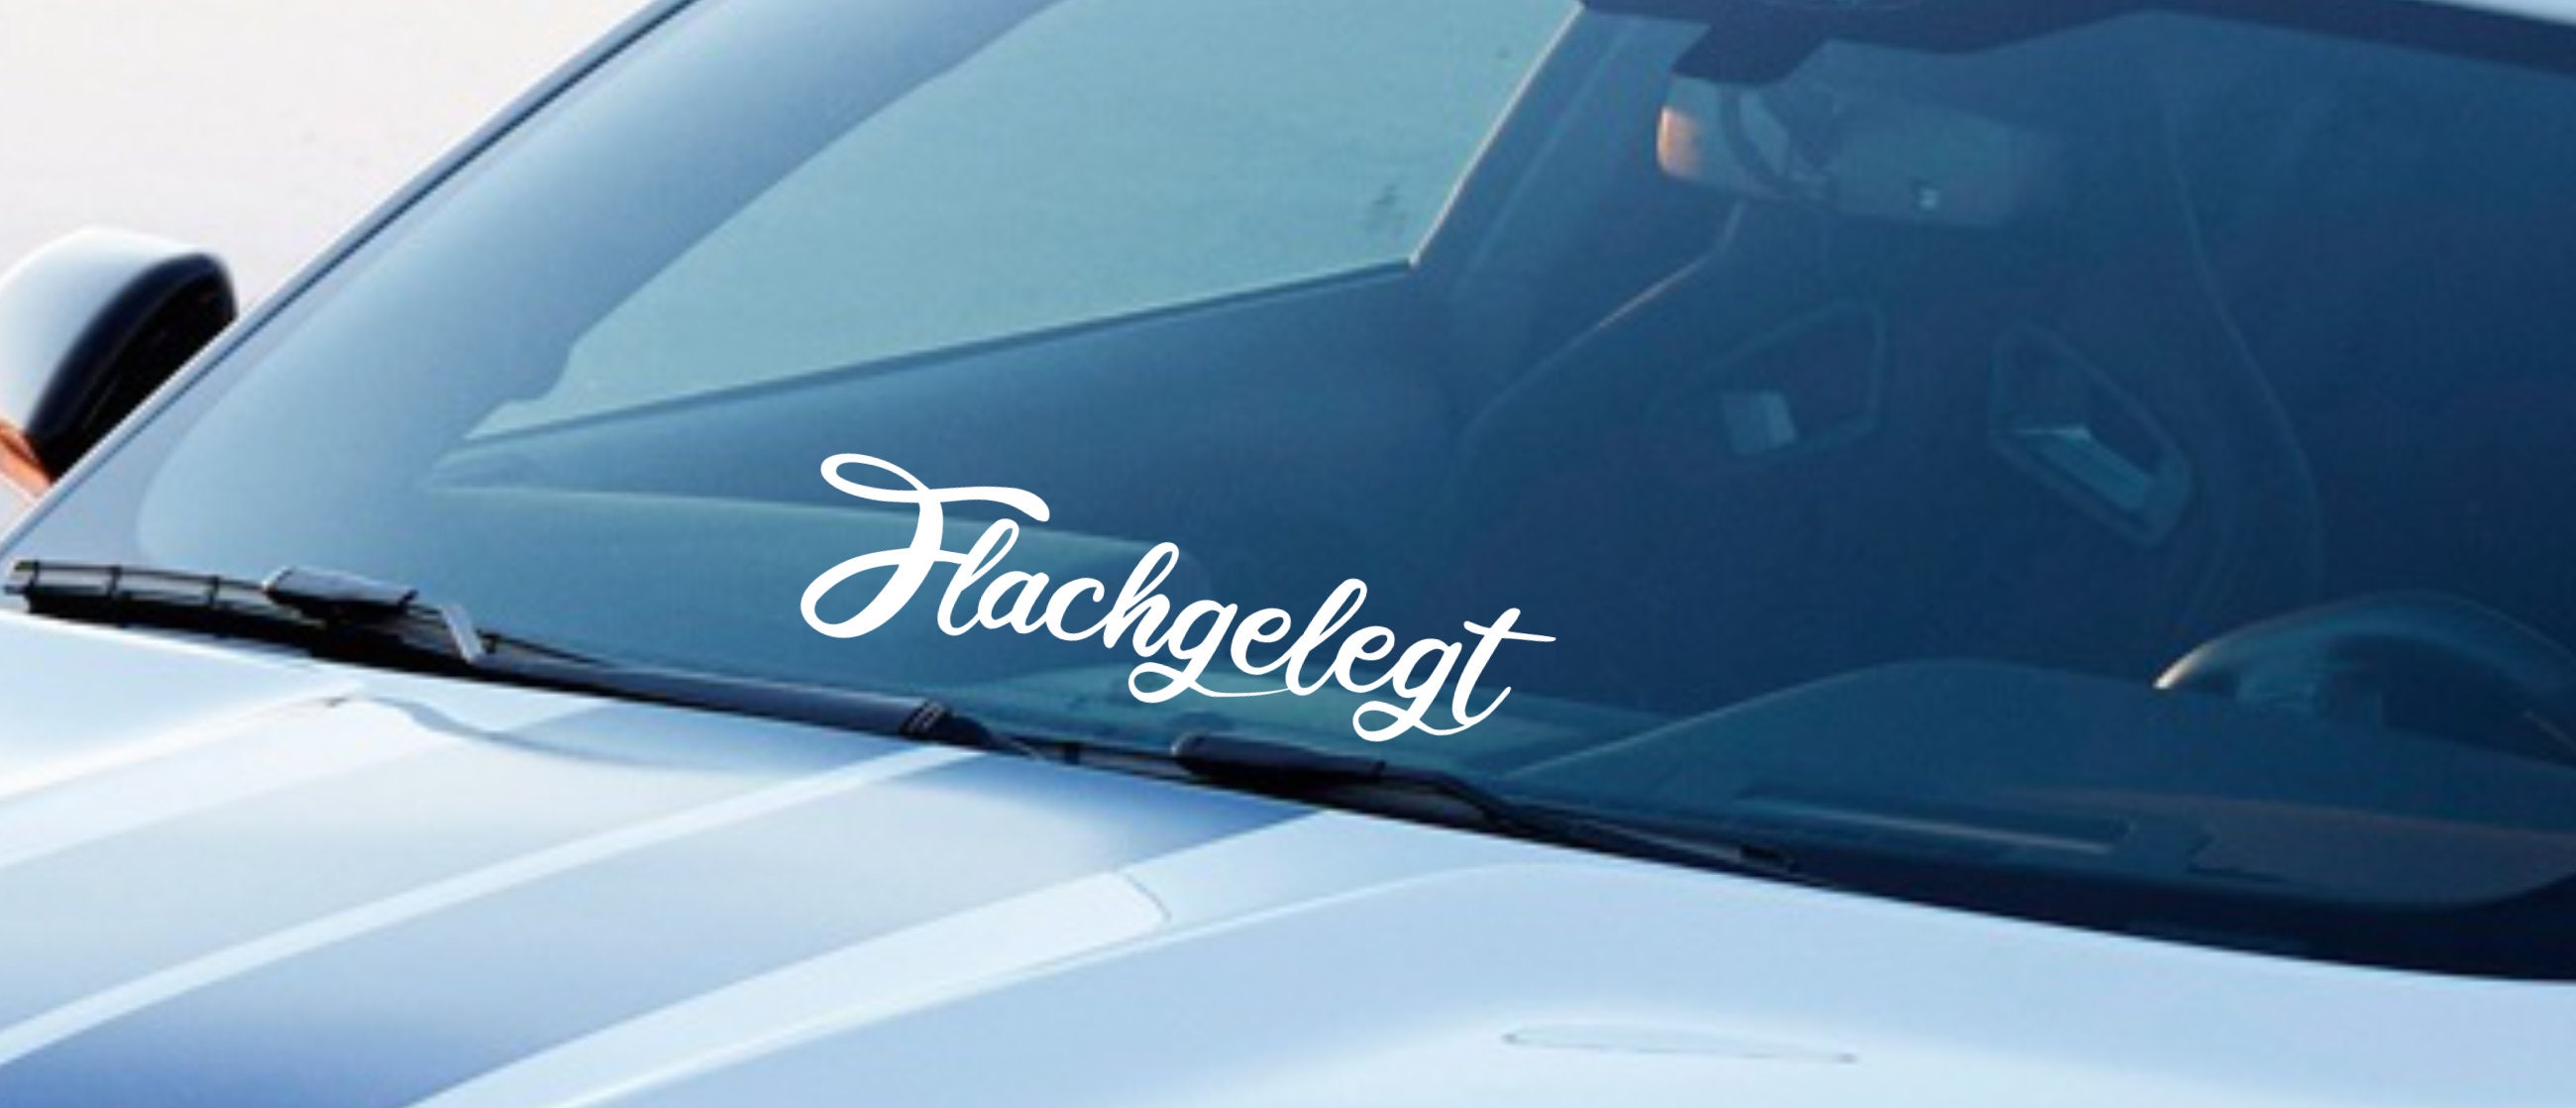 50 cm car sticker side sticker windshield sticker tuning sticker NEW